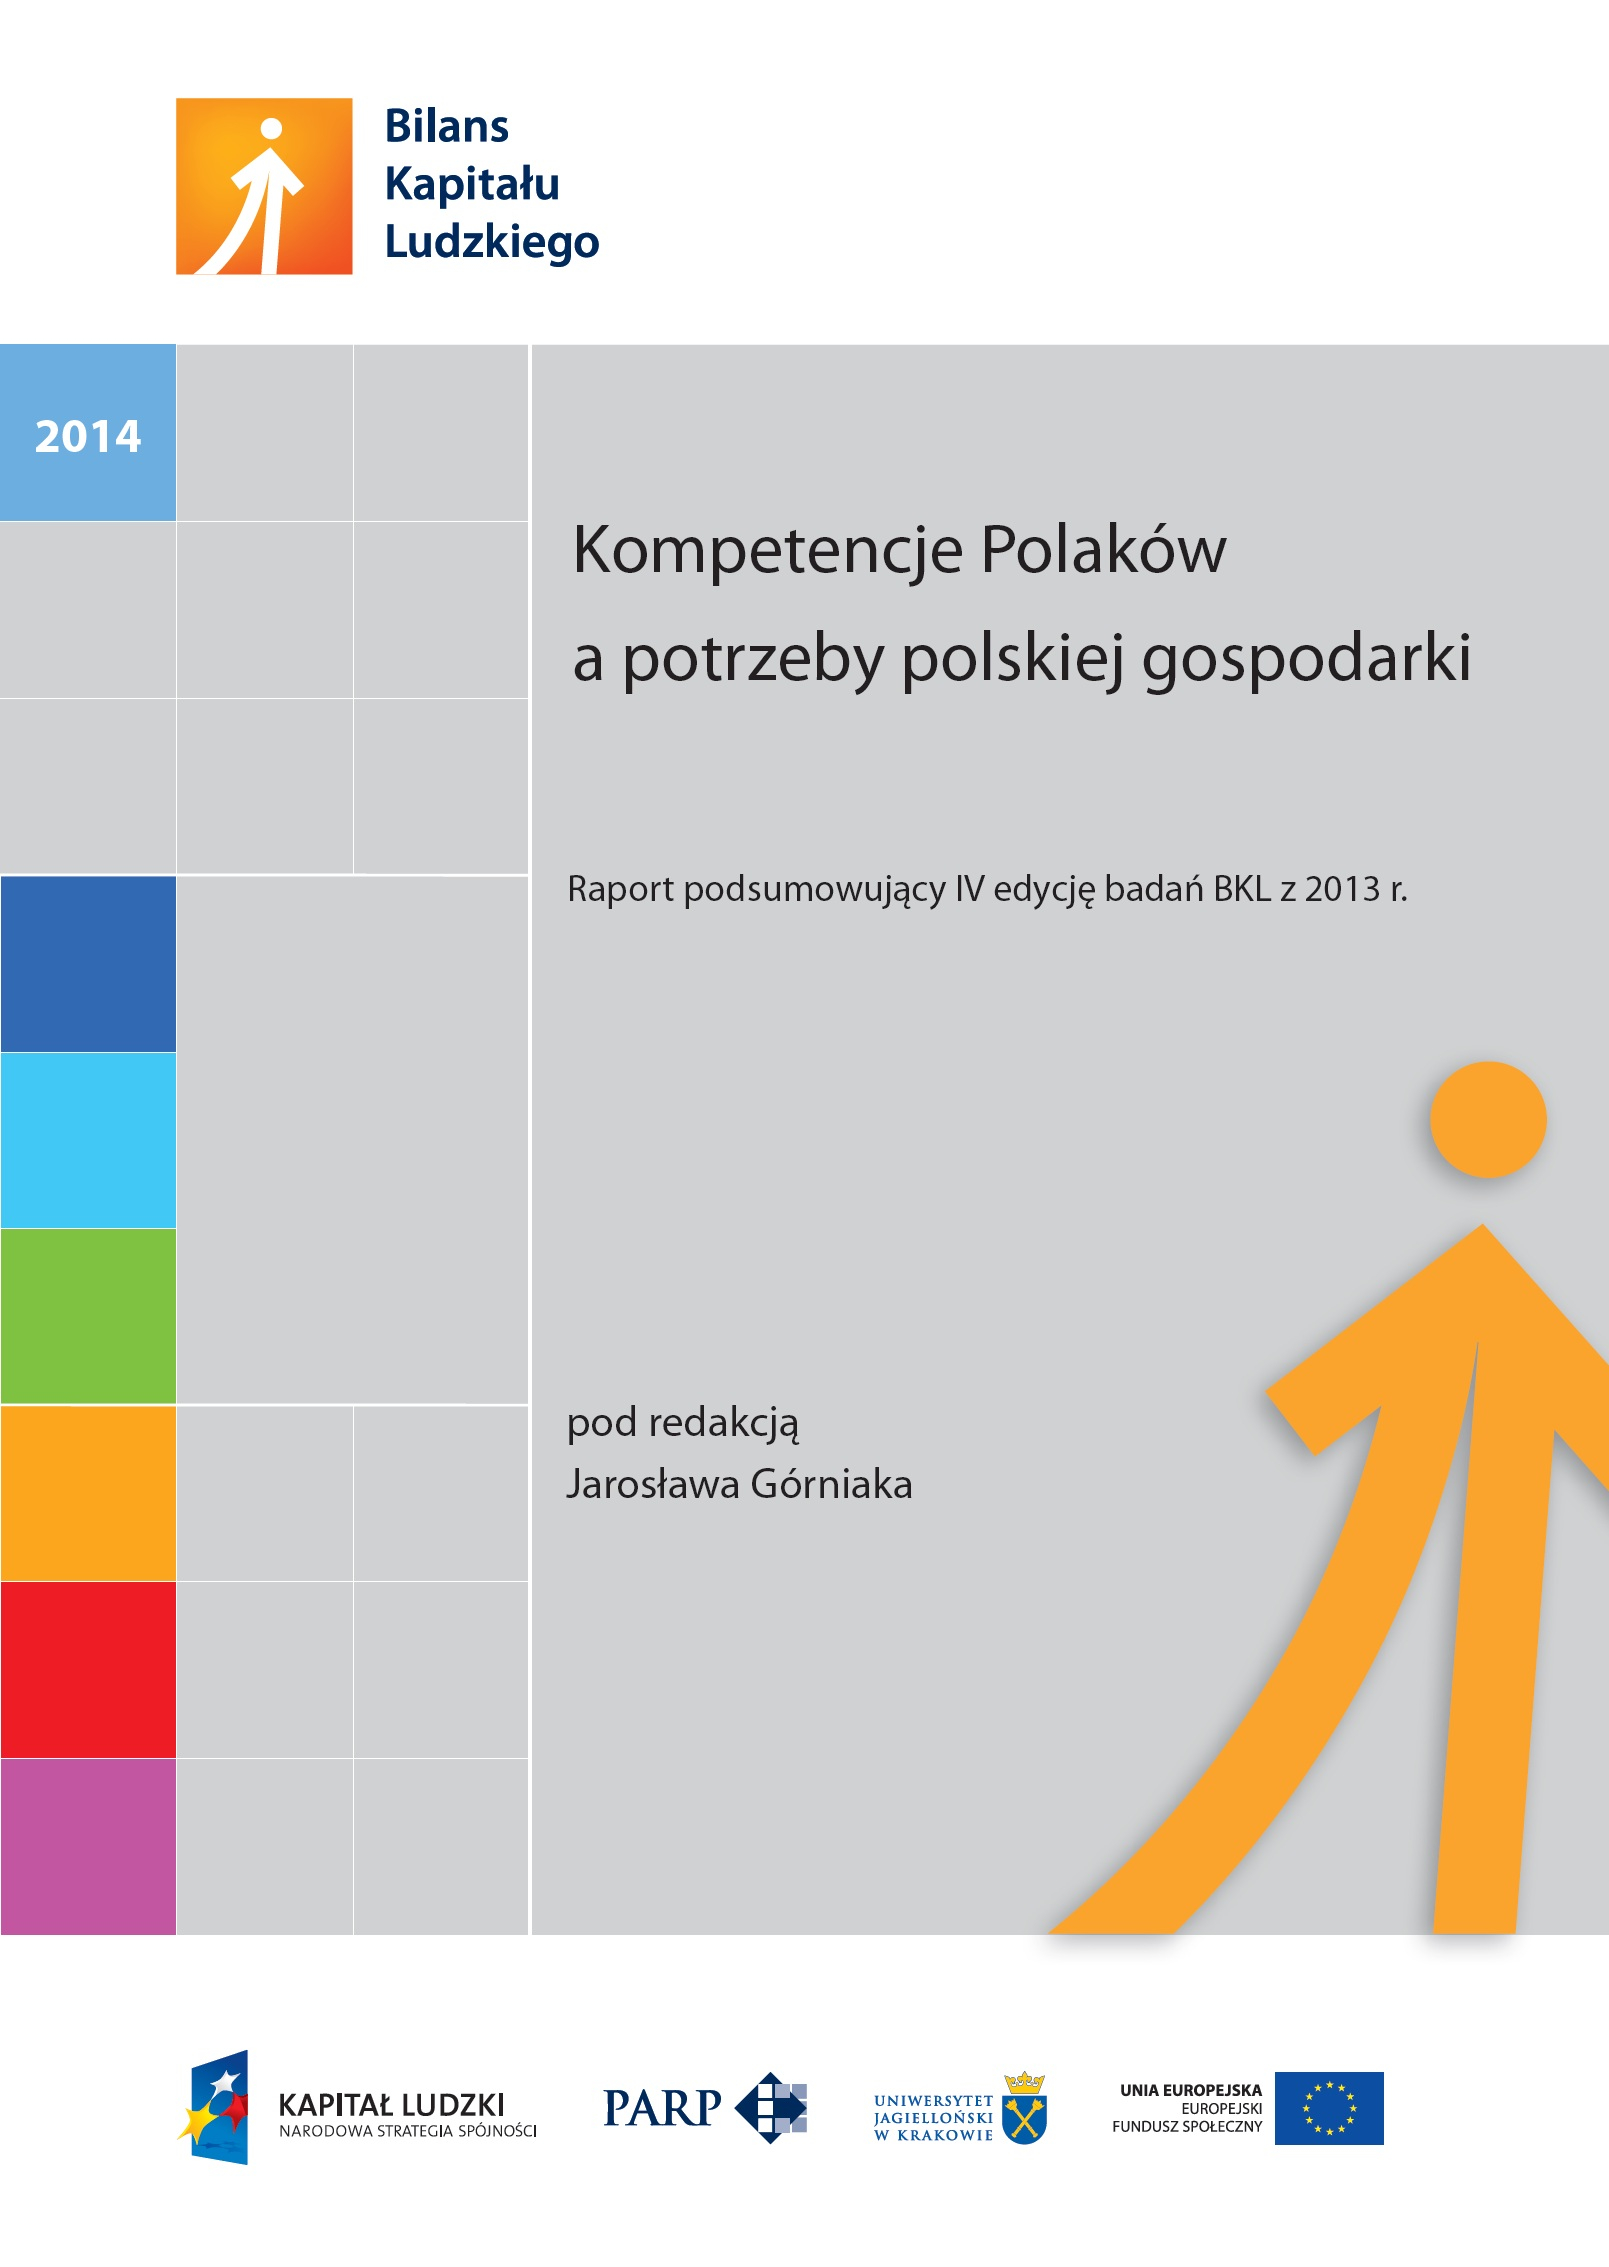 Kompetencje Polaków a potrzeby polskiej gospodarki